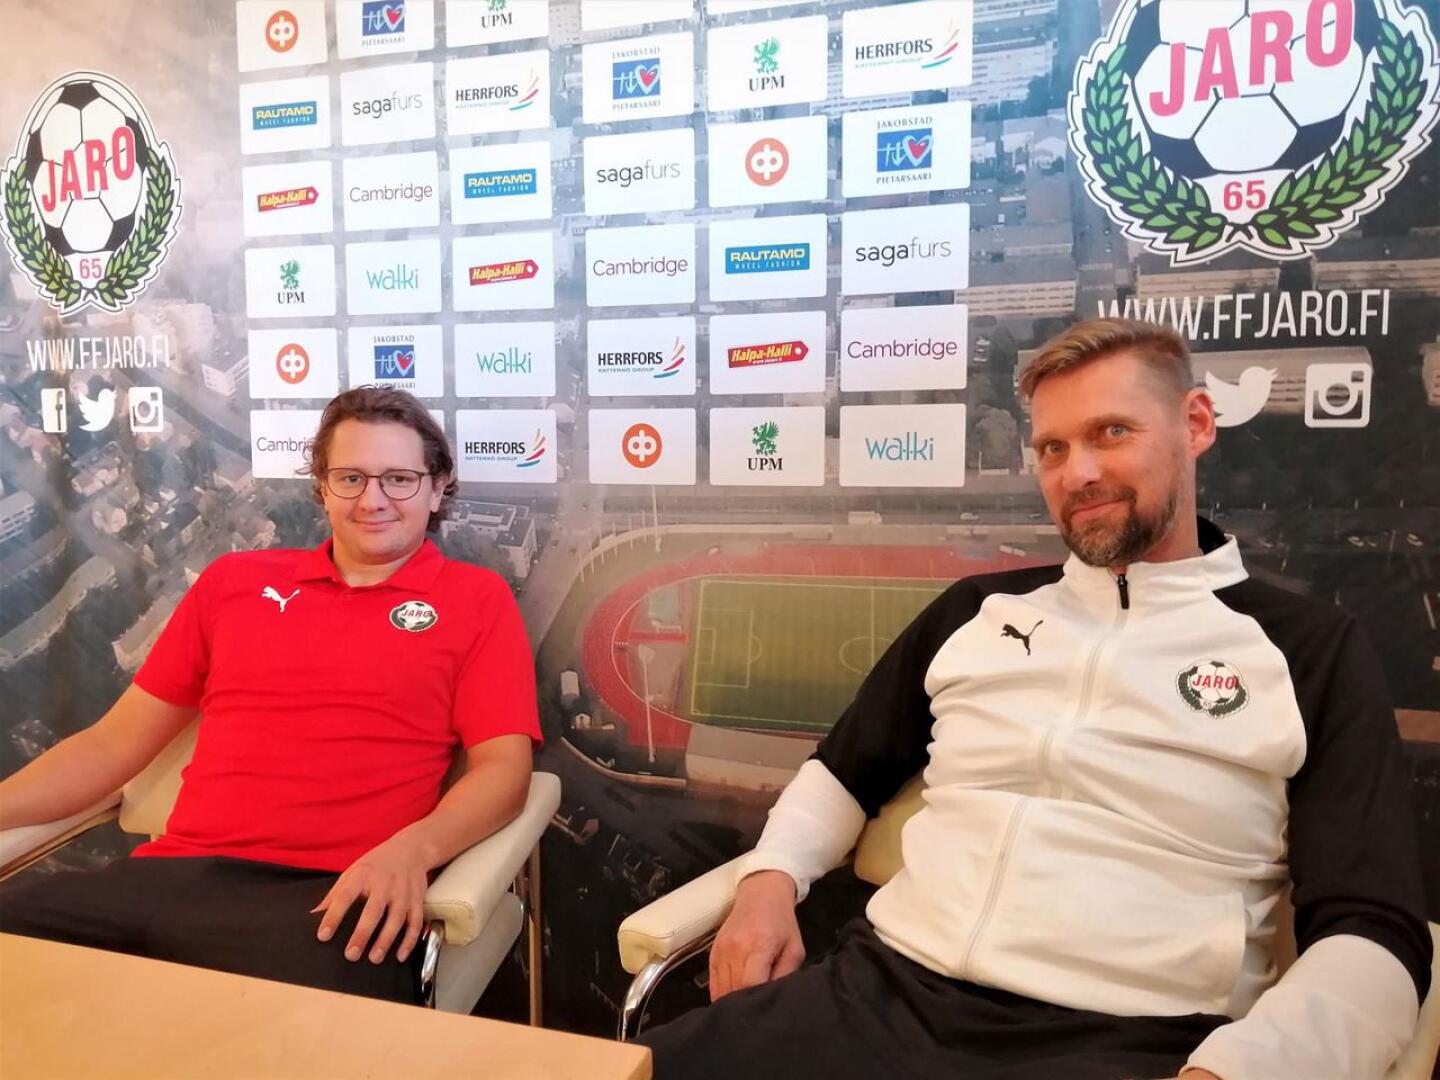 Keskikenttämies Markus Kronholm ja päävalmentaja Niklas Käcko olivat aavistuksen velmulla tuulella Jaron lehdistötilaisuudessa. 